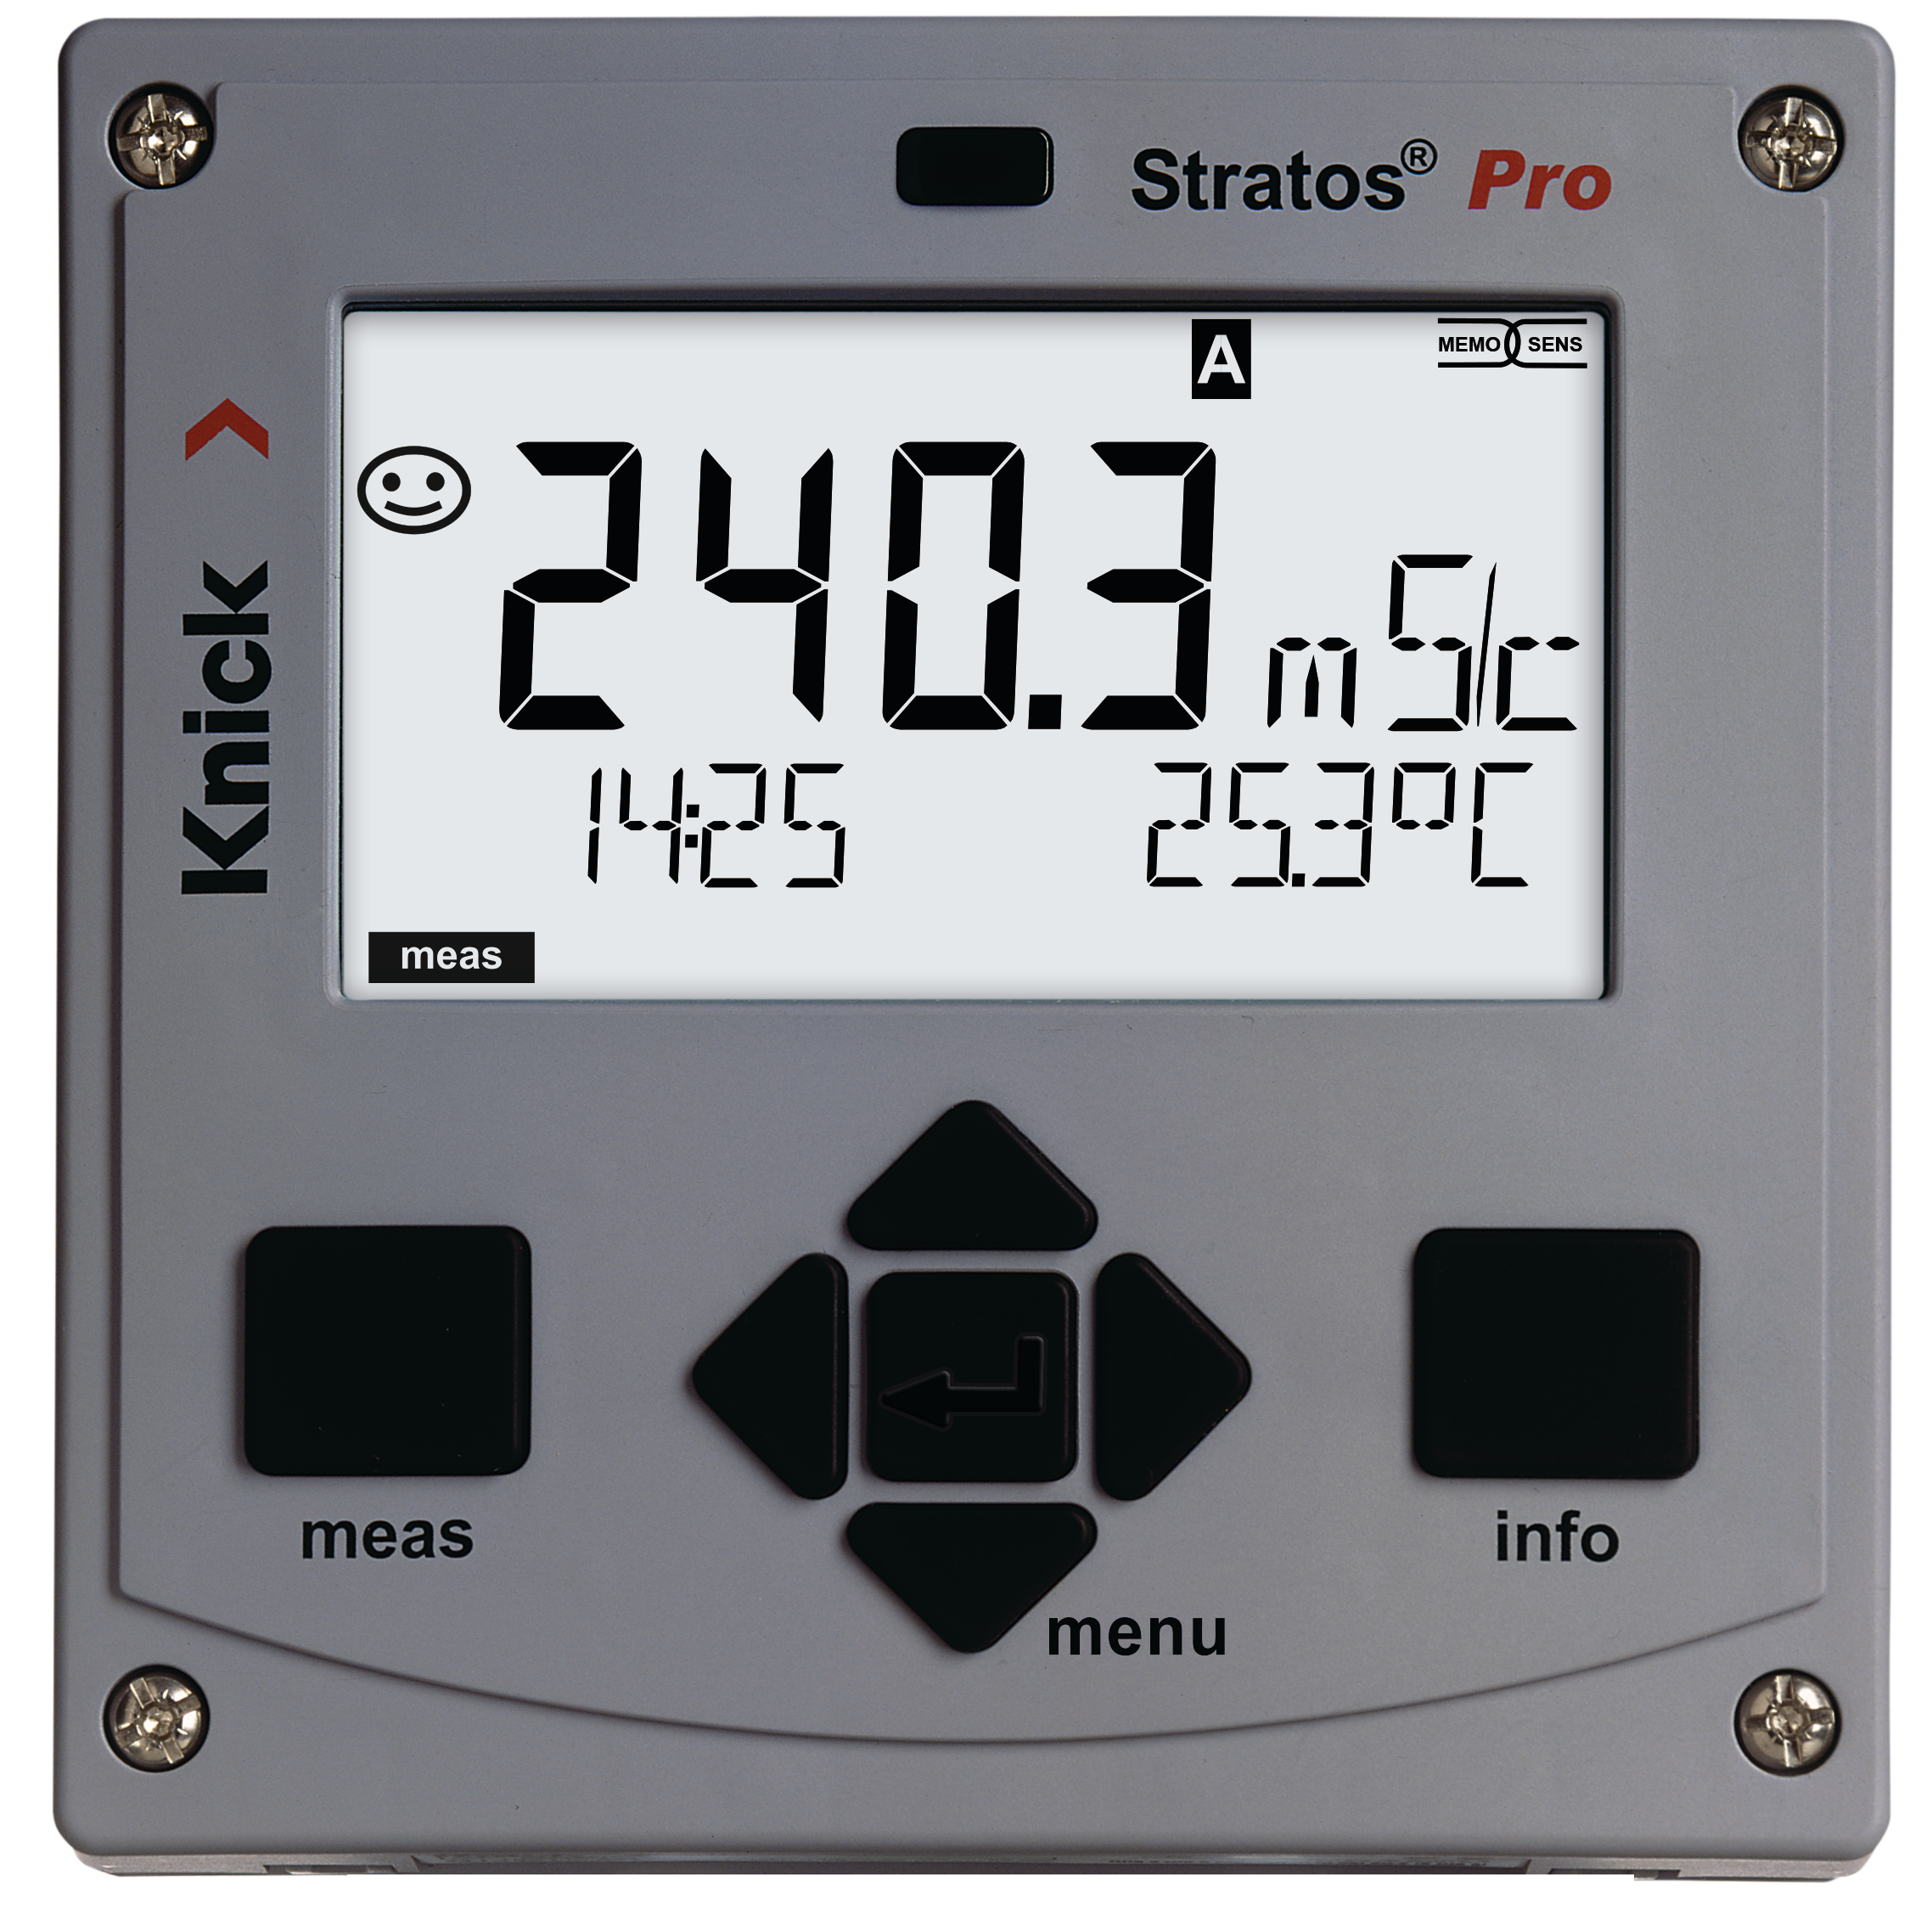 Stratos Pro A221X Multiparameter-Messgerät | Memosens/Analoge Sensoren | Ex Zone 0/1 | Profibus